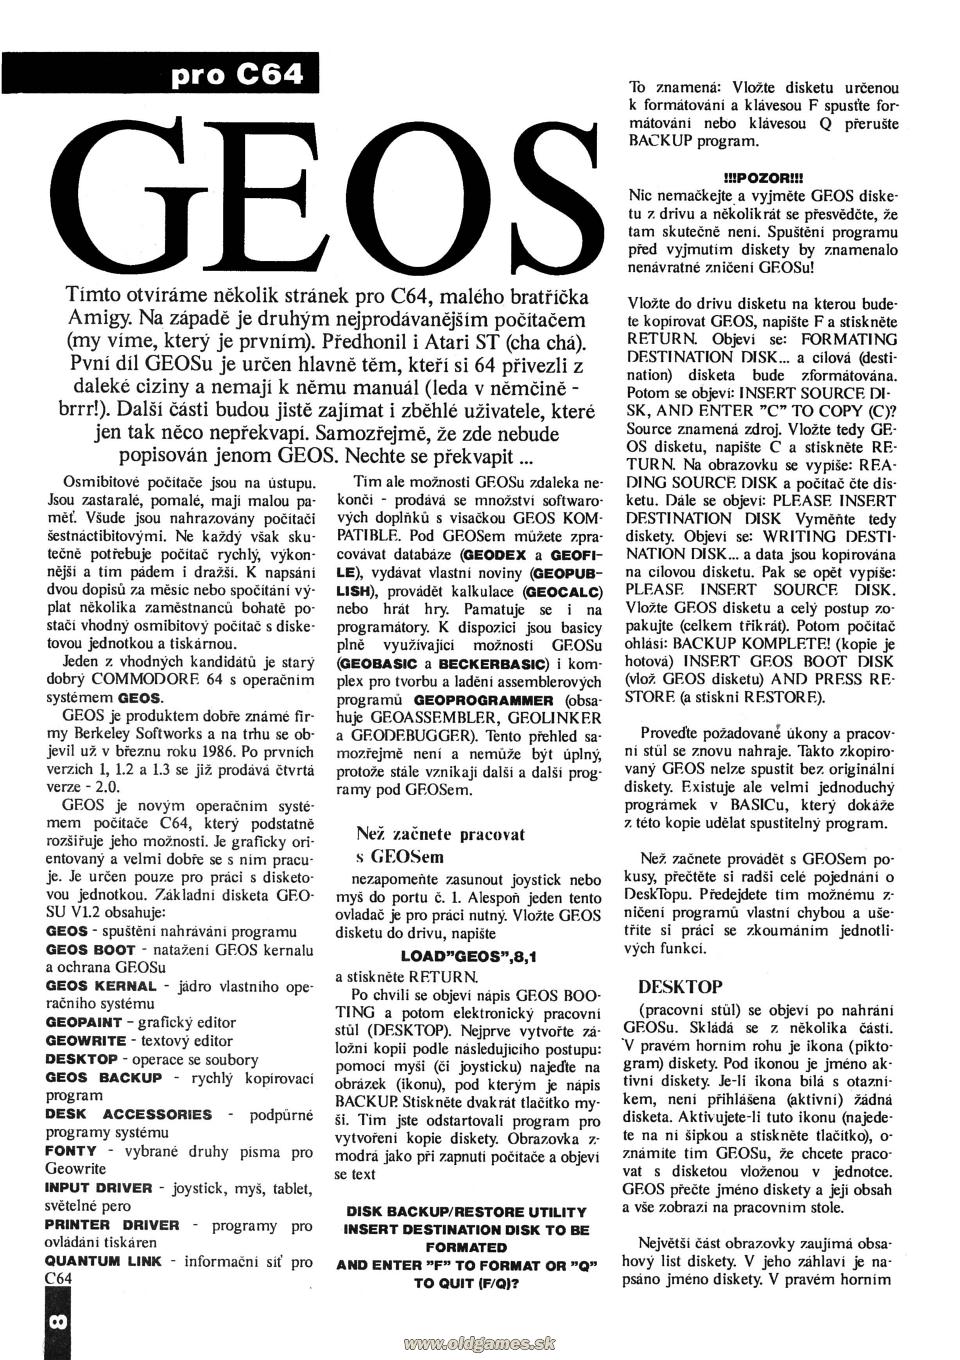 Commodore 64: GEOS